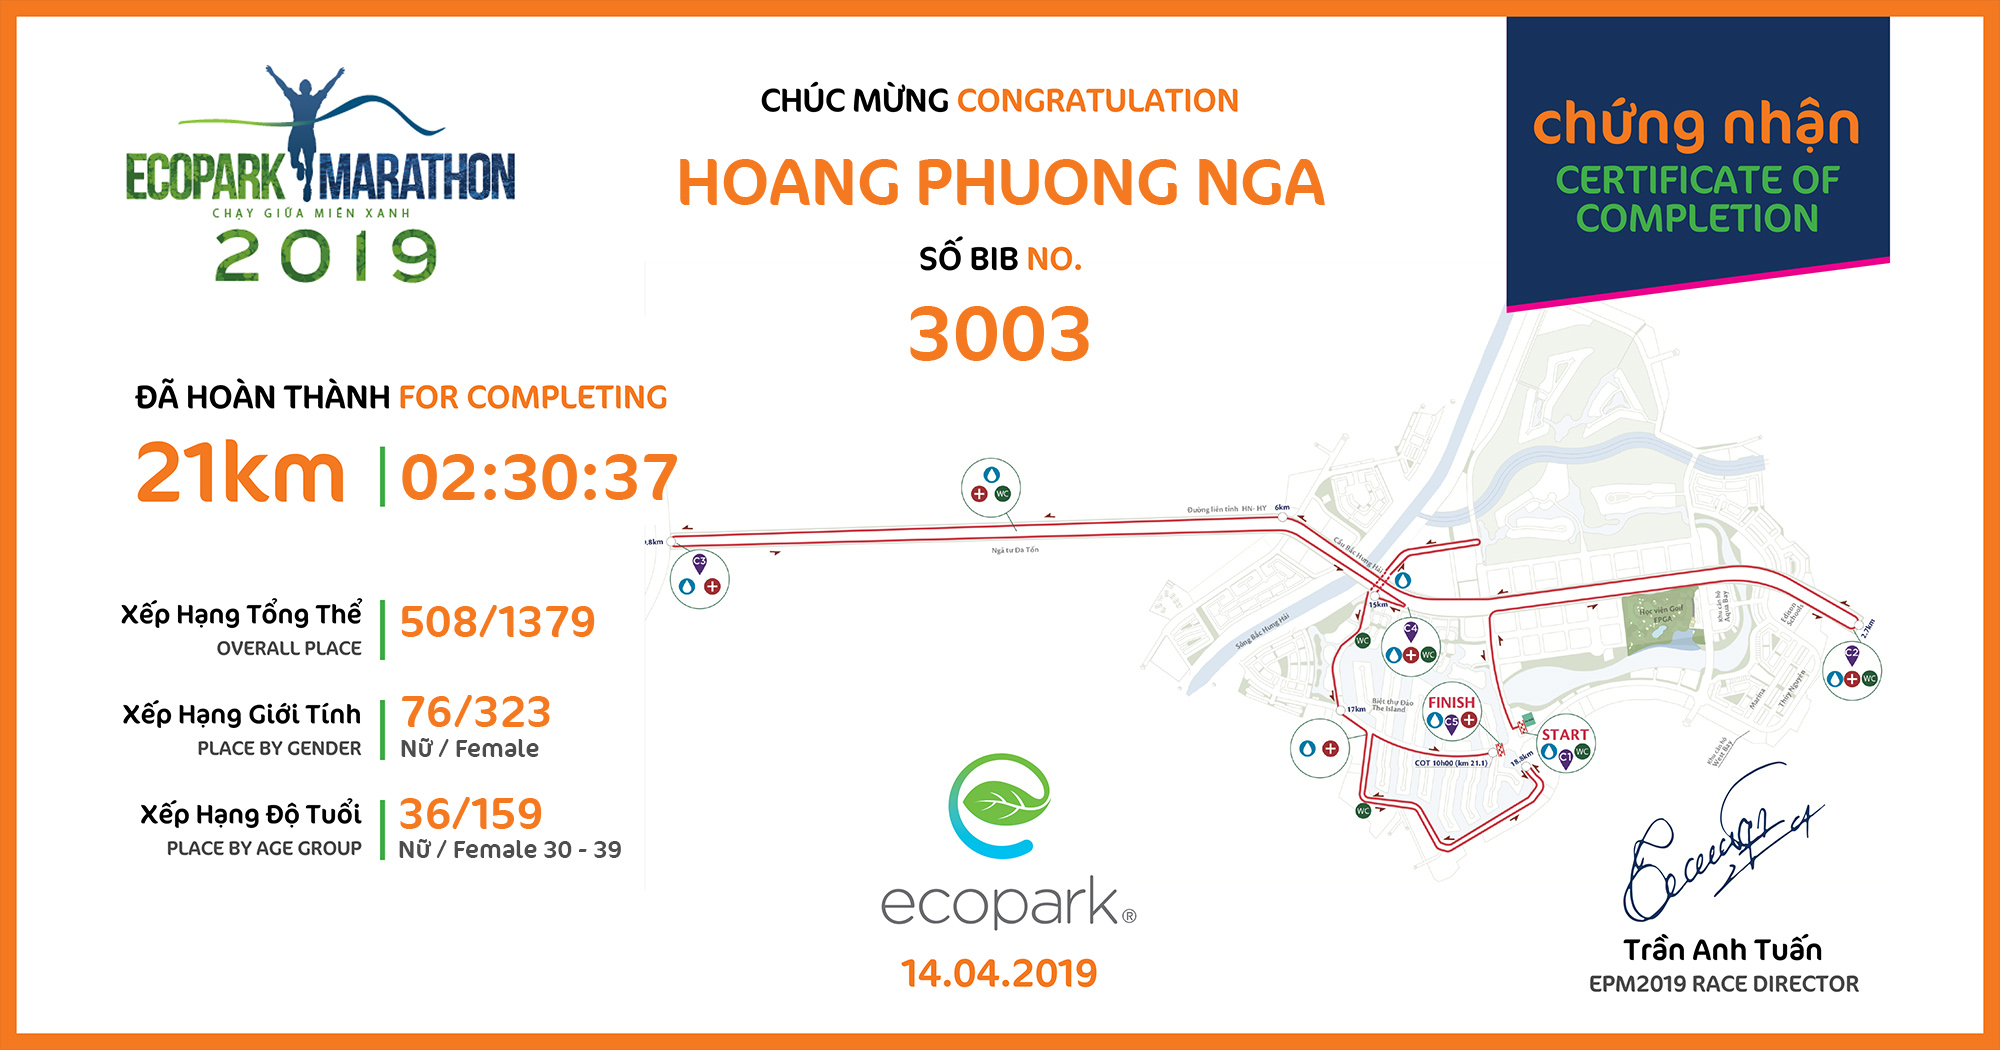 3003 - Hoang Phuong Nga